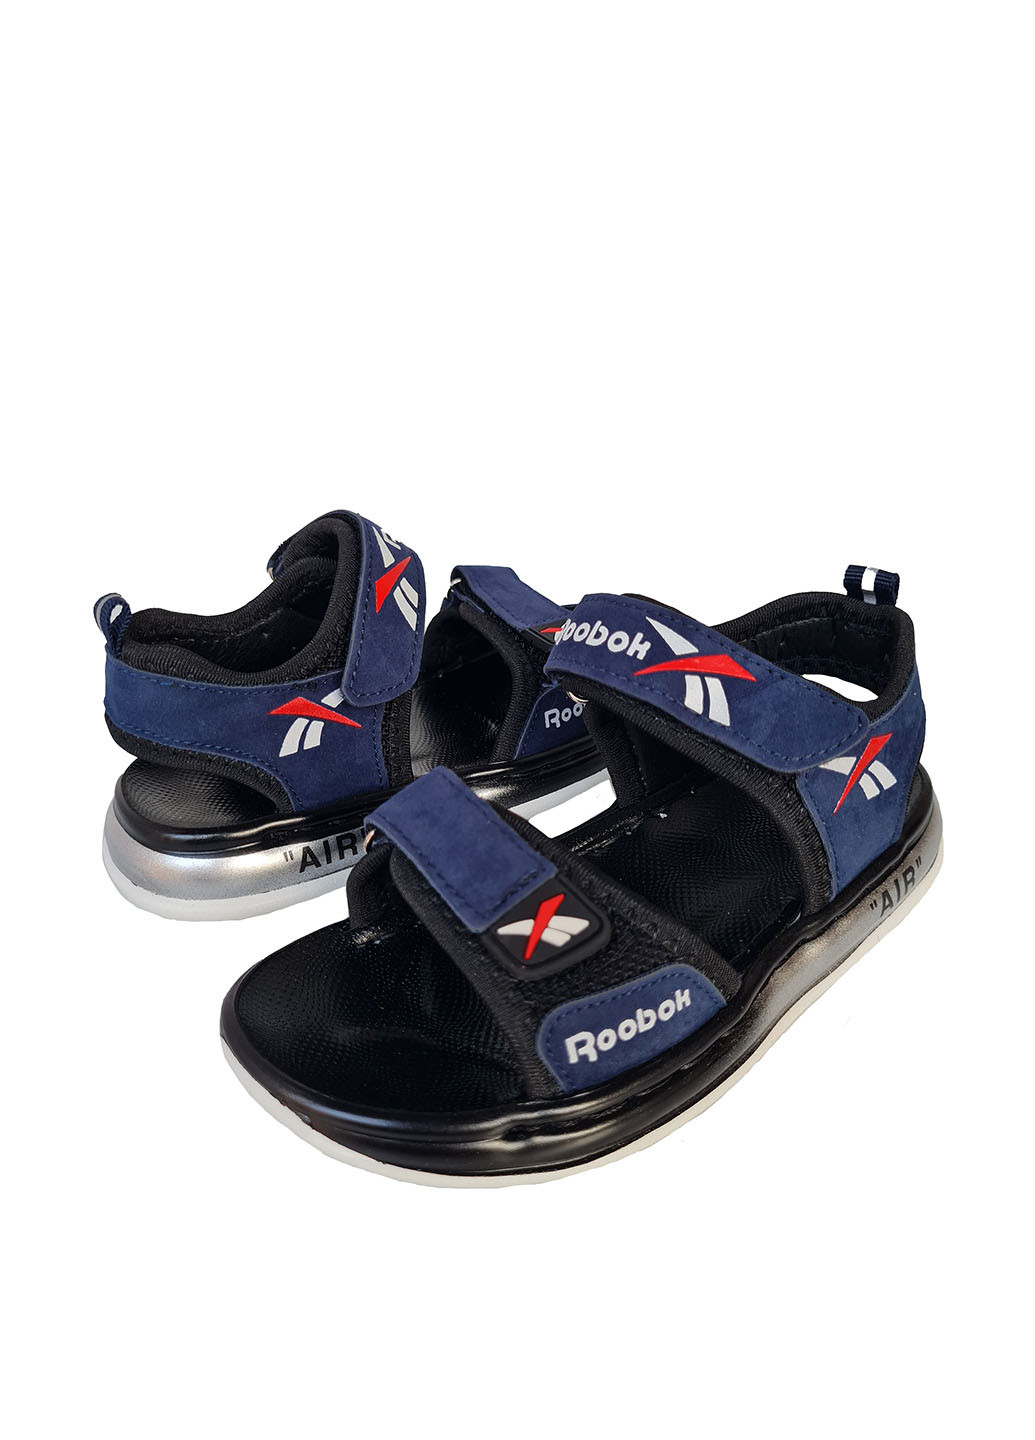 Темно-синие спортивные сандалии Канарейка на липучке